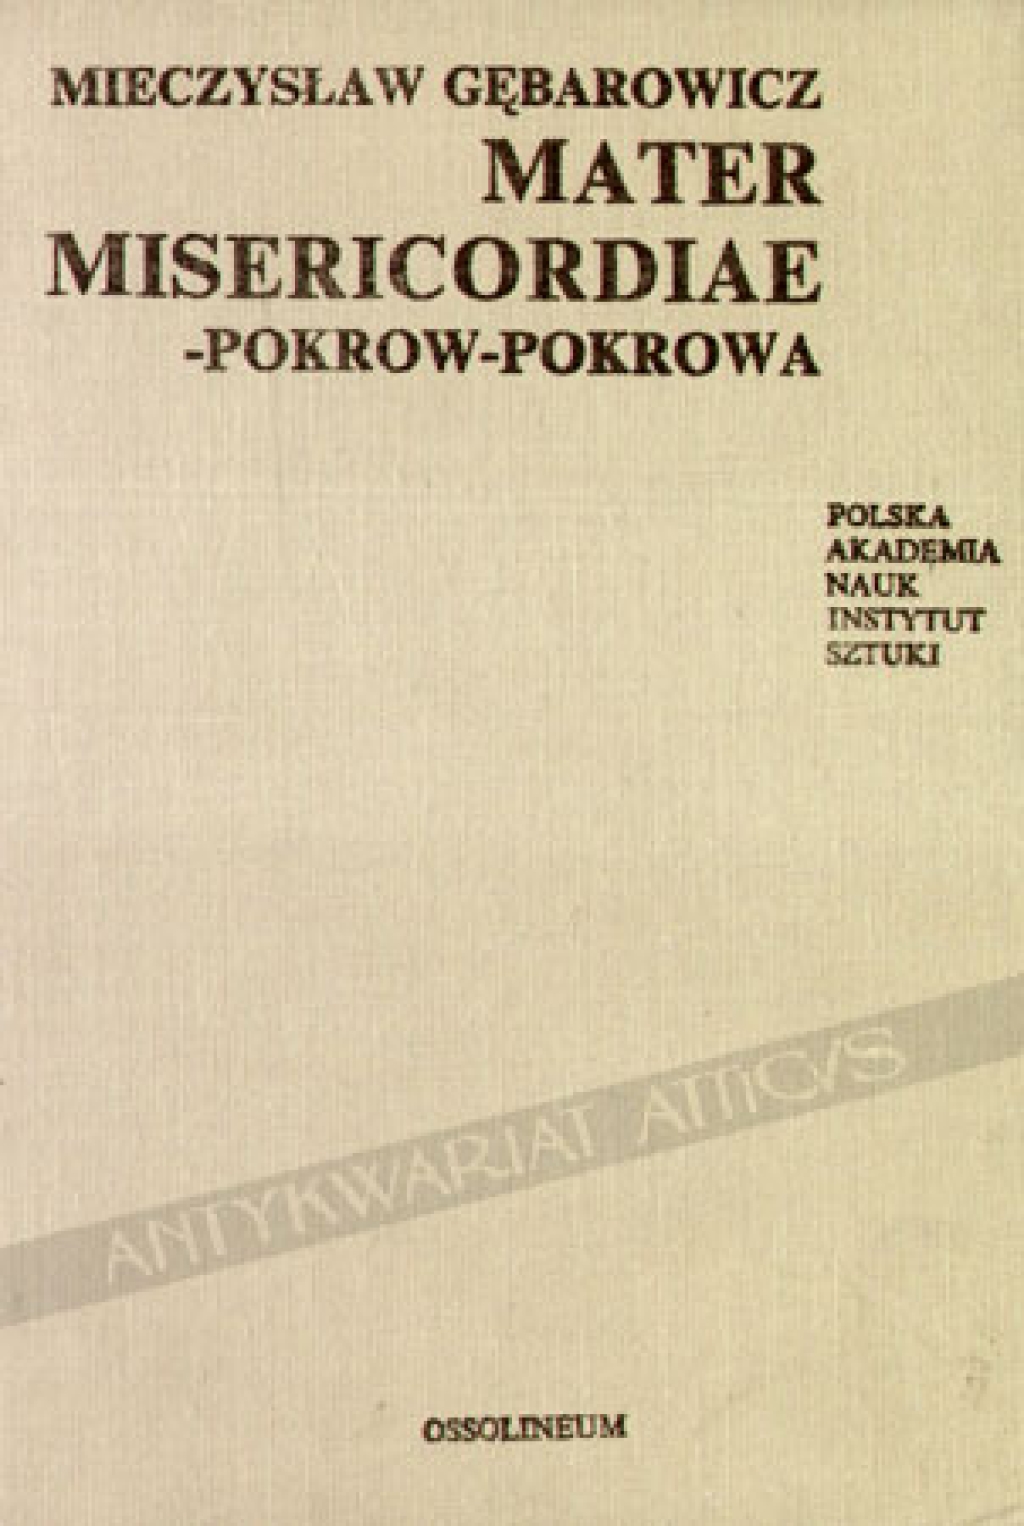 Mater Misericordiae-Pokrow-Pokrowa w sztuce i legendzie środkowo-wschodniej Europy